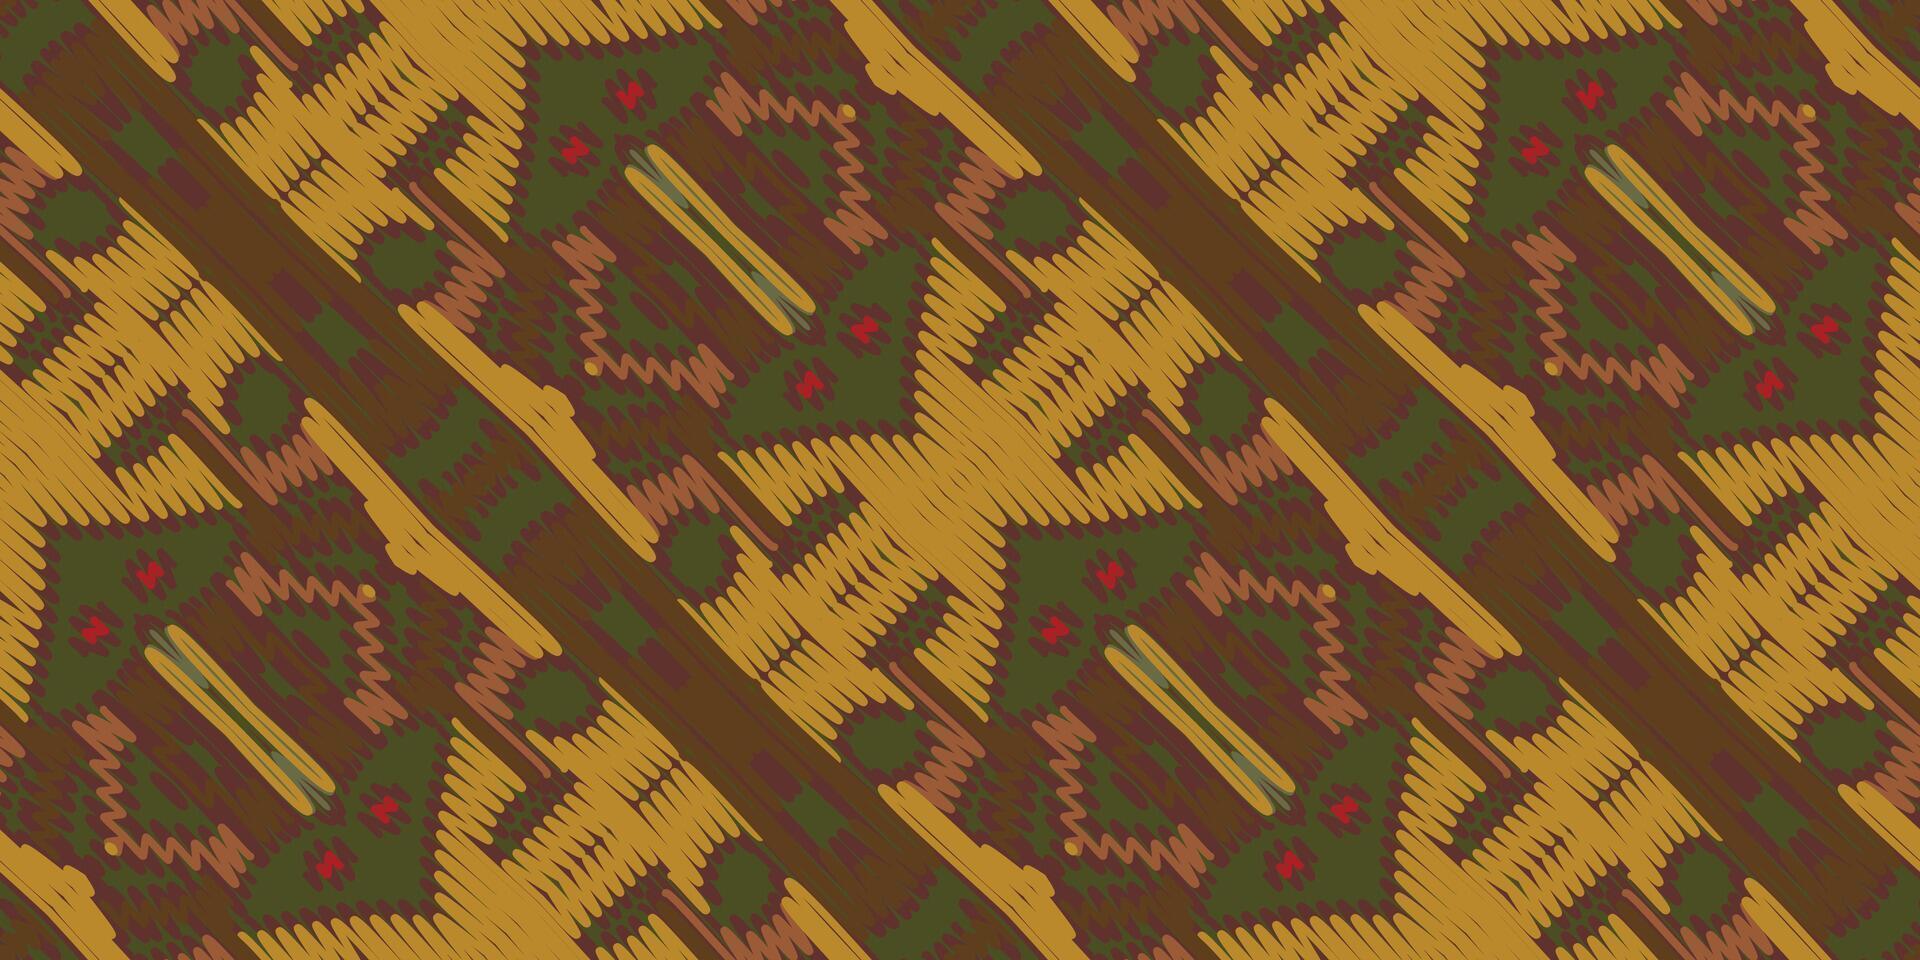 ikat floral cachemir bordado en blanco fondo.ikat étnico oriental modelo tradicional.azteca estilo resumen vector ilustración.diseño para textura,tela,ropa,envoltura,decoración,bufanda,alfombra